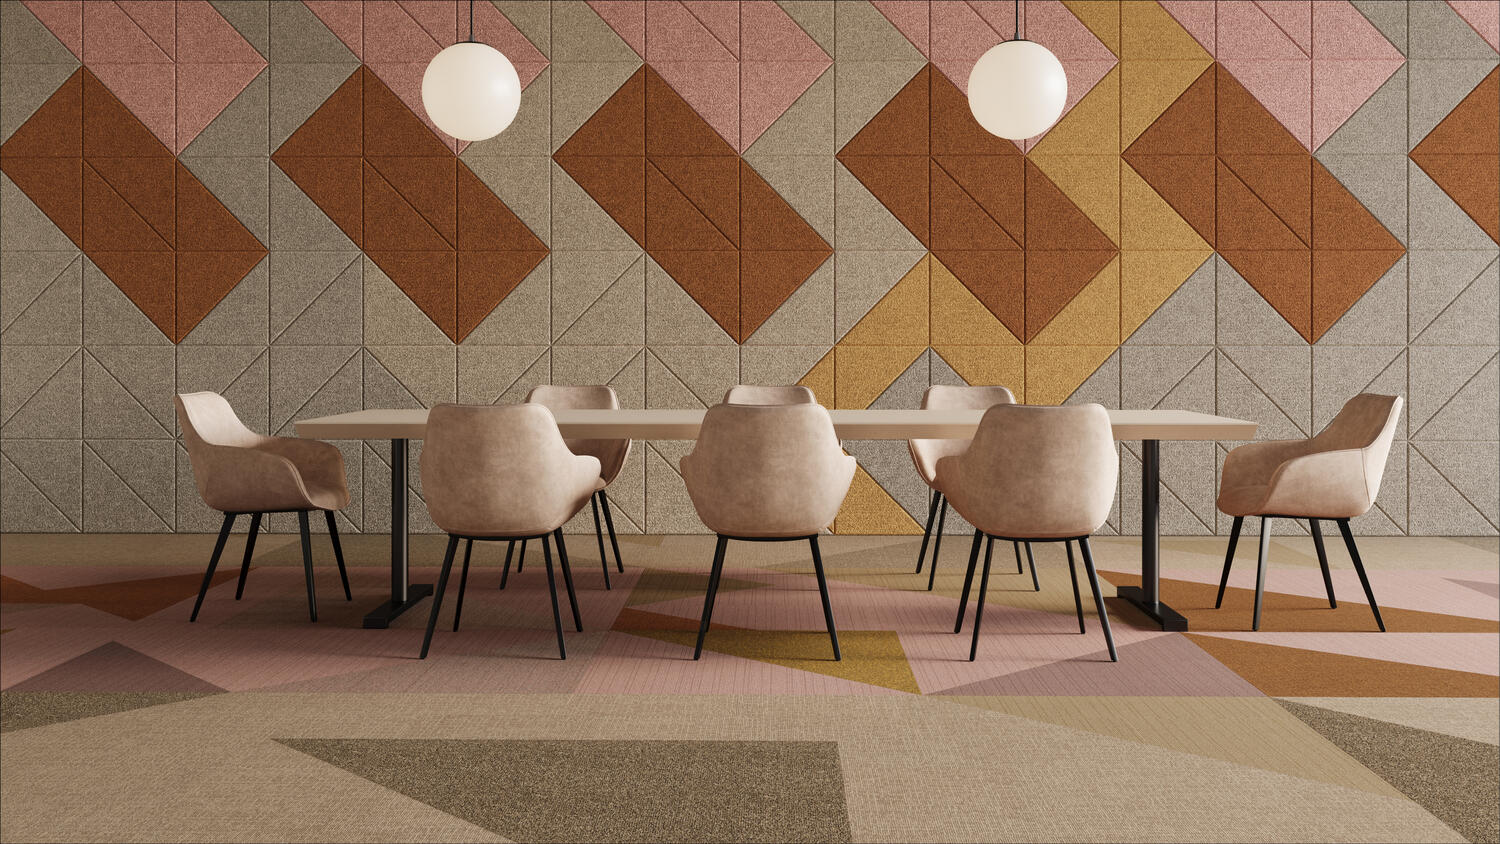 Espacio de interior armonioso con un diseño basado en una gama de colores coordinados utilizando los suelos de Tarkett u las paredes acústicas de BAUX